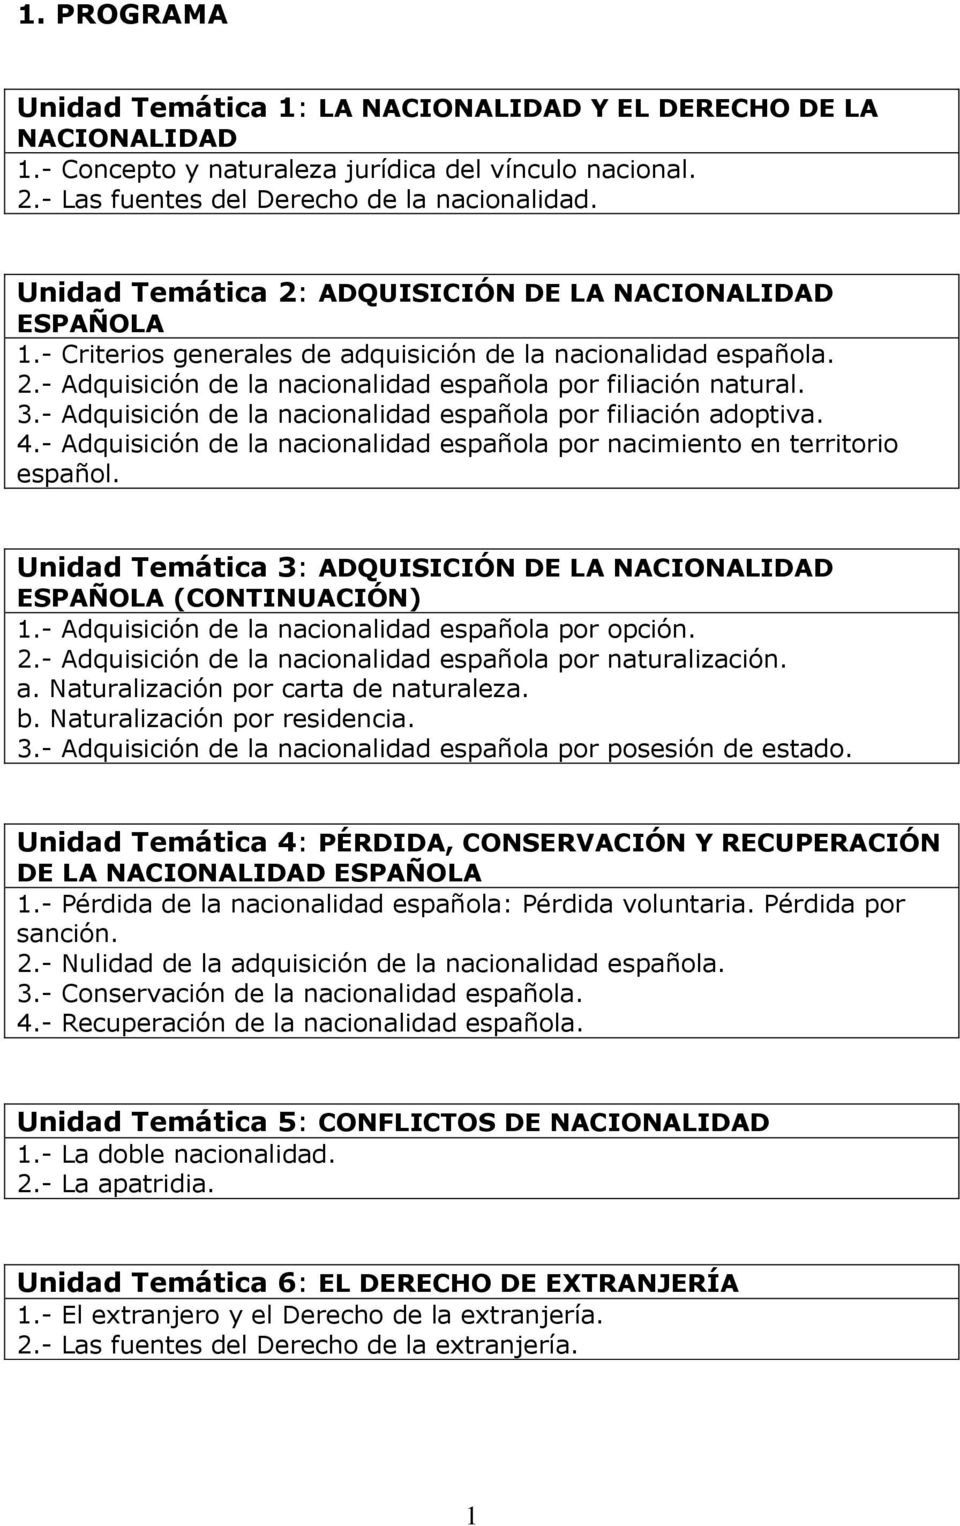 - Adquisición de la nacionalidad española por filiación adoptiva. 4.- Adquisición de la nacionalidad española por nacimiento en territorio español.